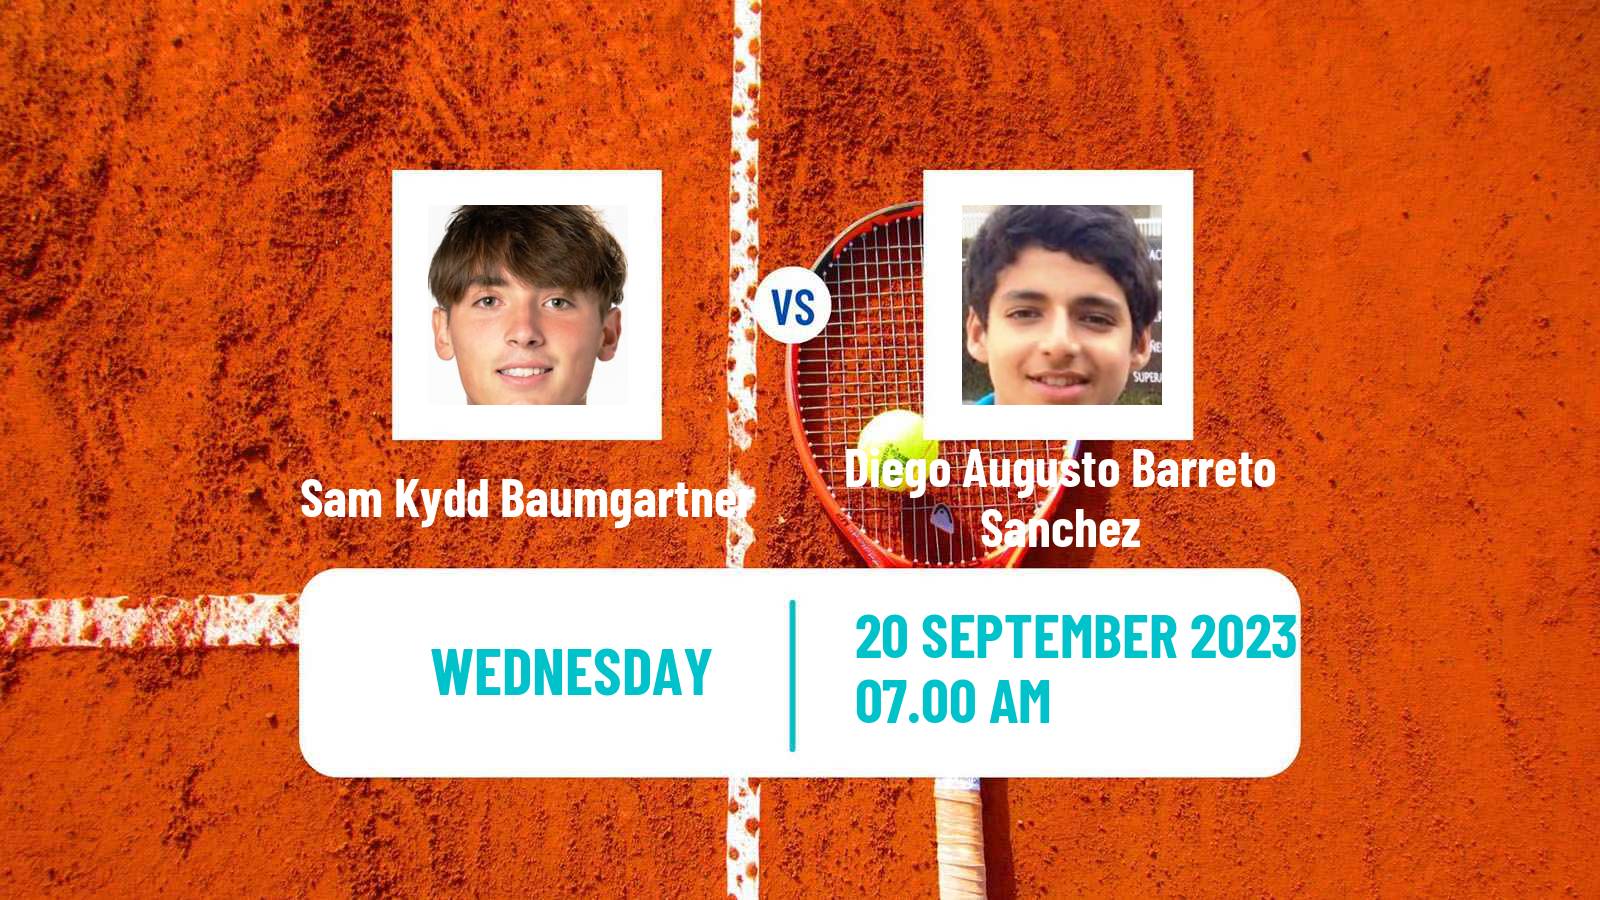 Tennis ITF M15 Melilla Men Sam Kydd Baumgartner - Diego Augusto Barreto Sanchez